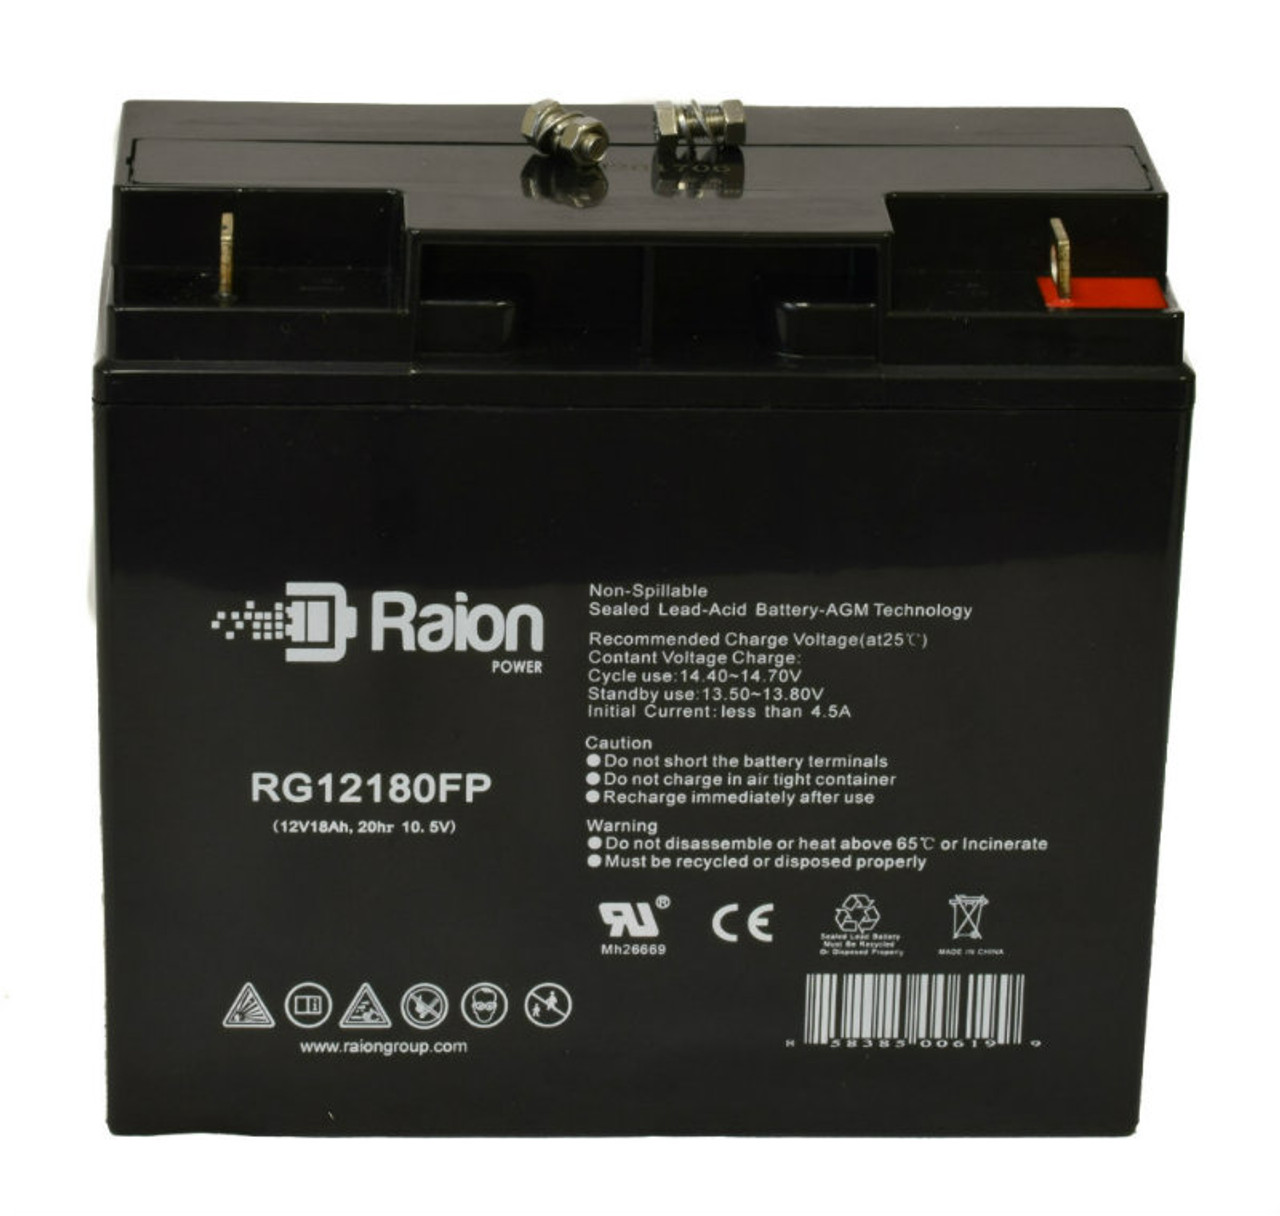 Raion Power RG12180FP 12V 18Ah Lead Acid Battery for Phantom Power BT-12V-18A